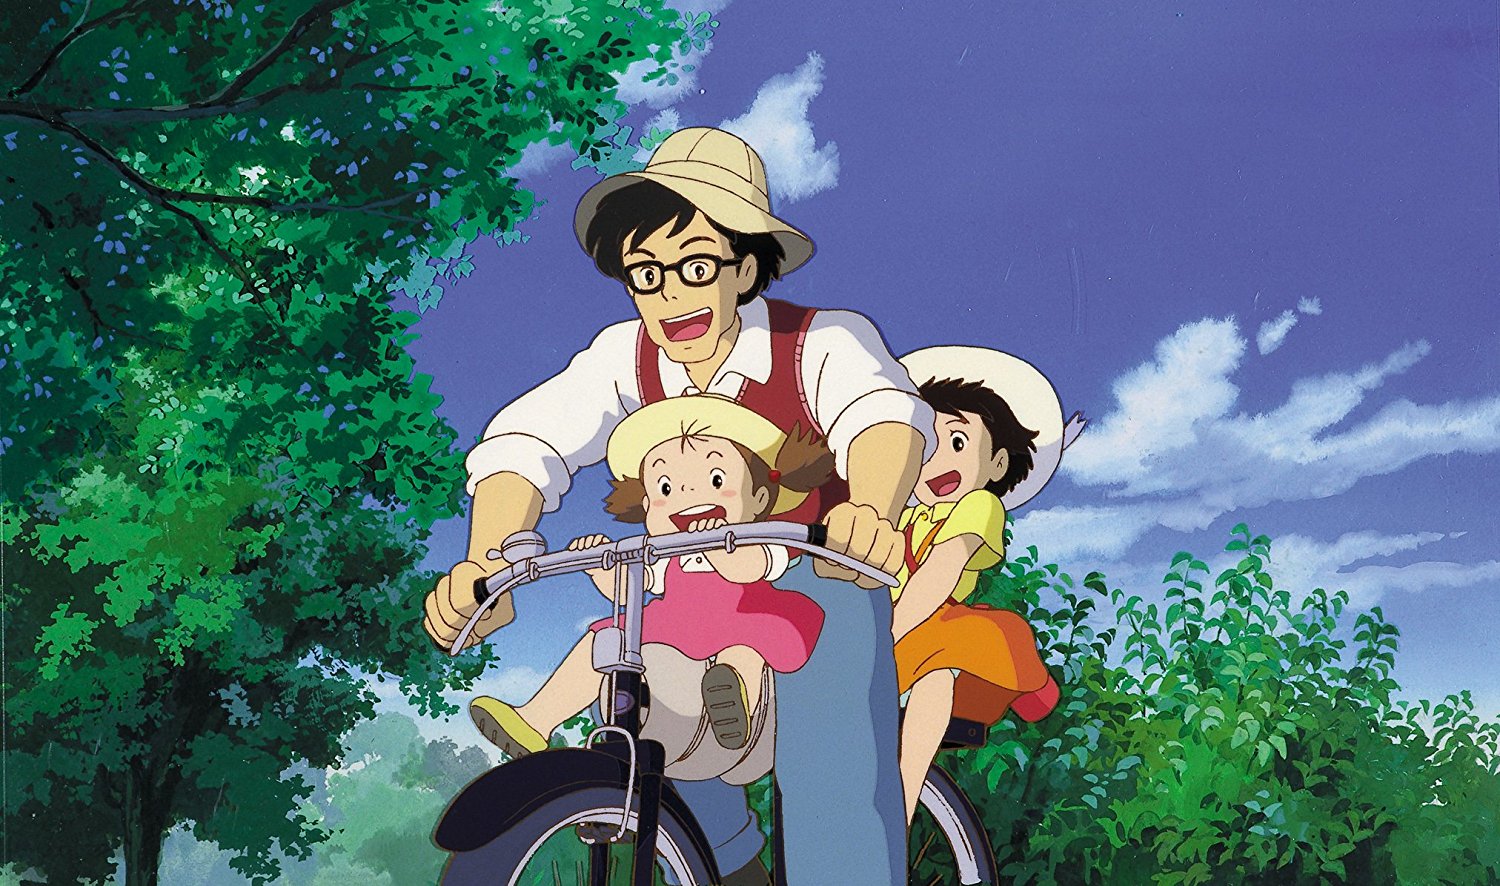 Mei, Satsuki und ihr Vater sind auf einem Fahrrad unterwegs